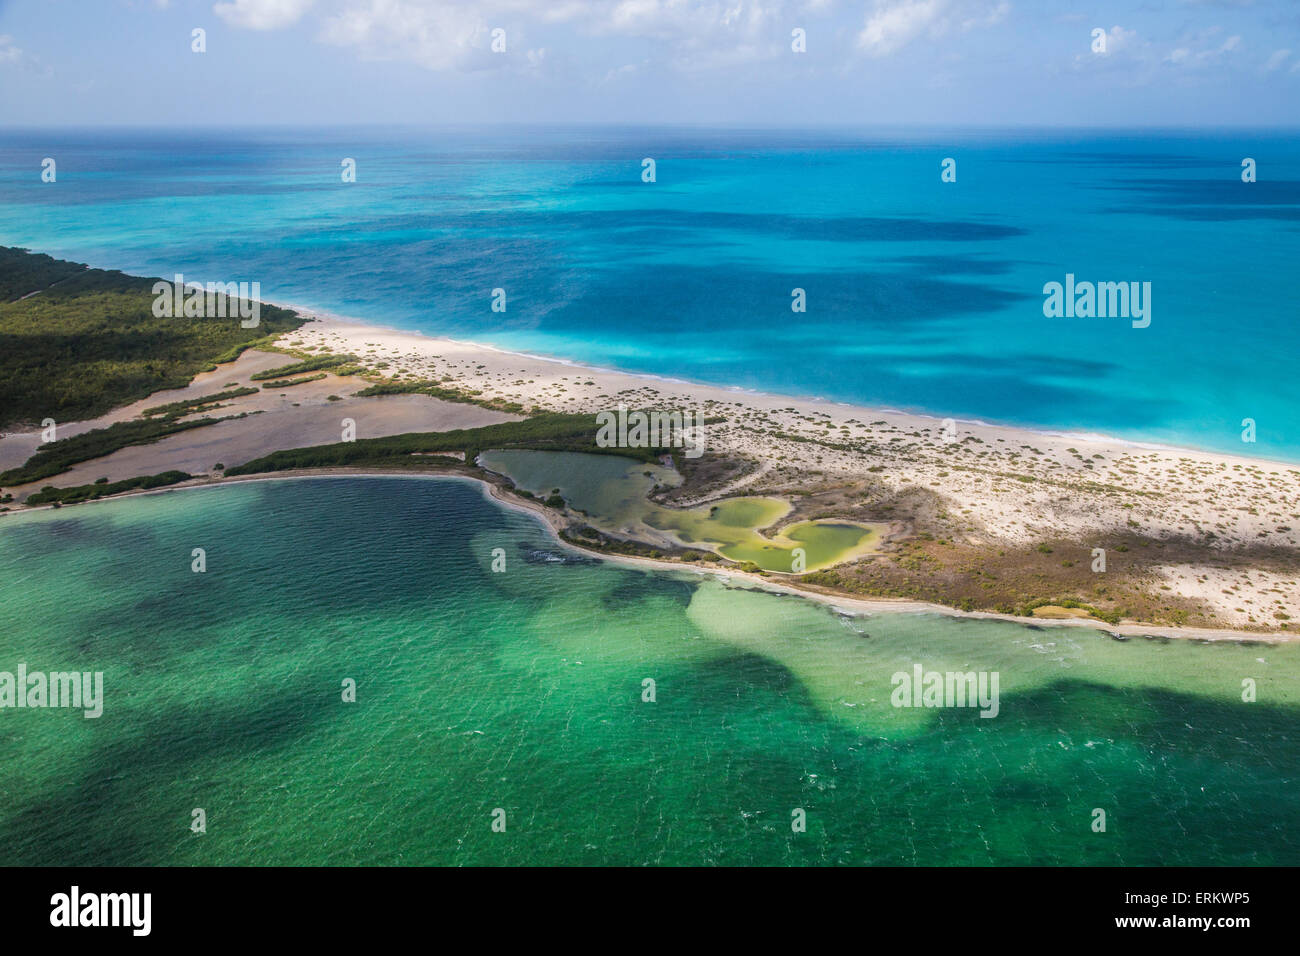 Vue d'un coin de Barbuda, la frégate Bird Sanctuary touche une mince bande de sable qui sépare la Mer des Caraïbes, Barbuda Banque D'Images